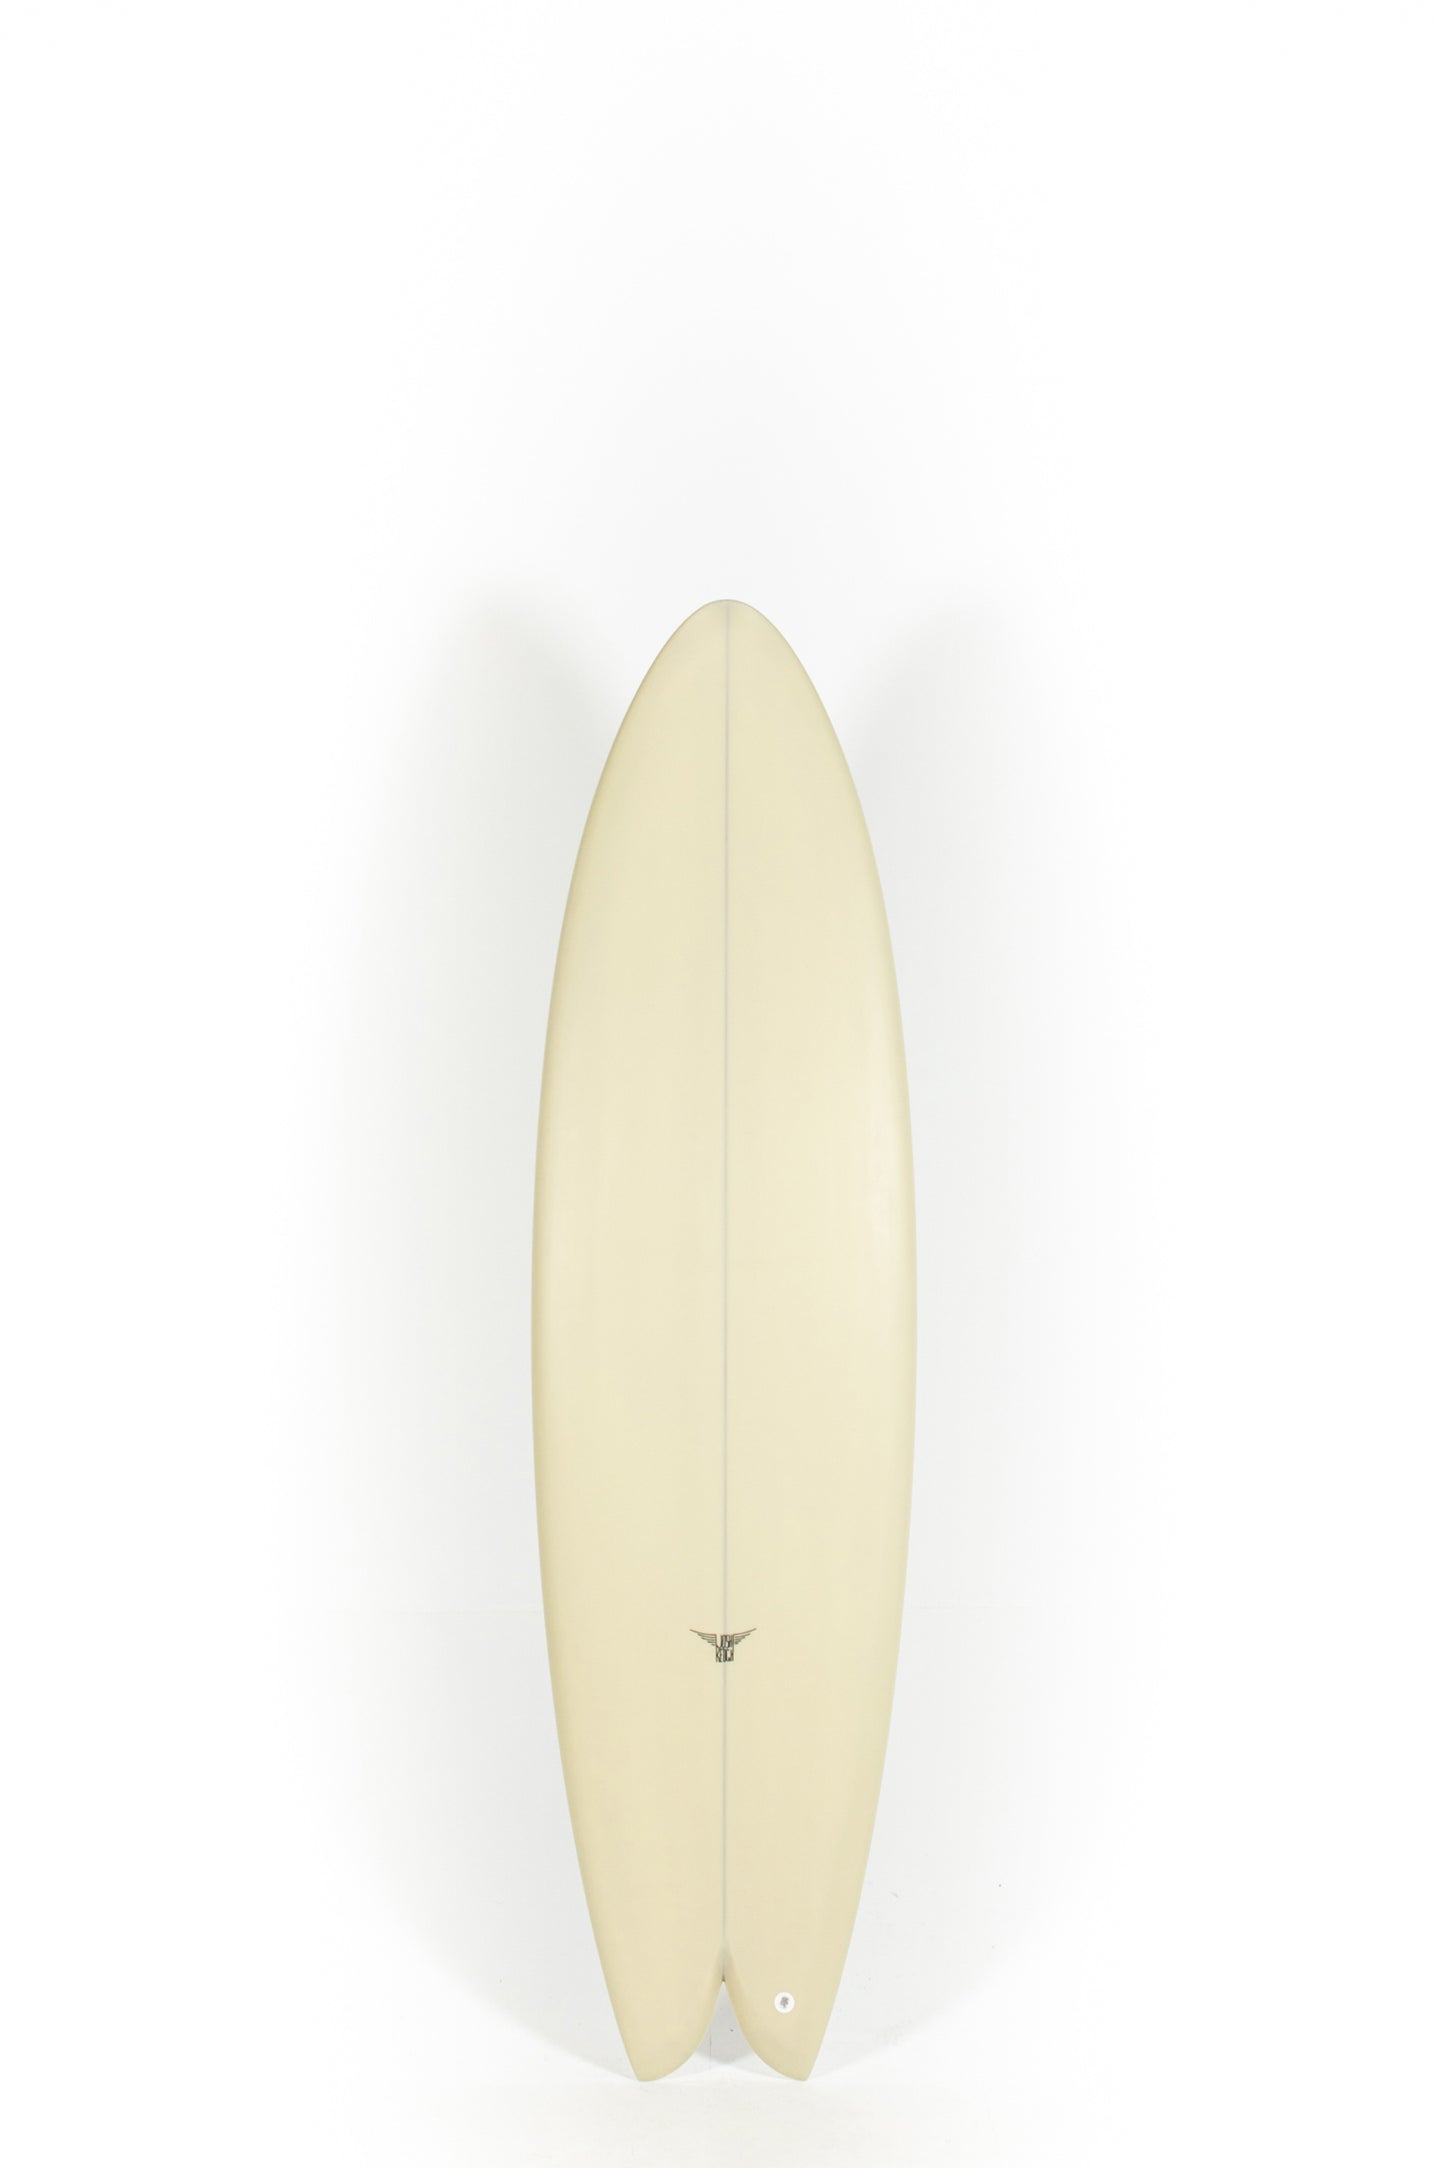 Pukas Surf Shop_Joshua Keogh Surfboard - M2 by Joshua Keogh - 6'8" x 21 1/4 x 2 11/16 - M268